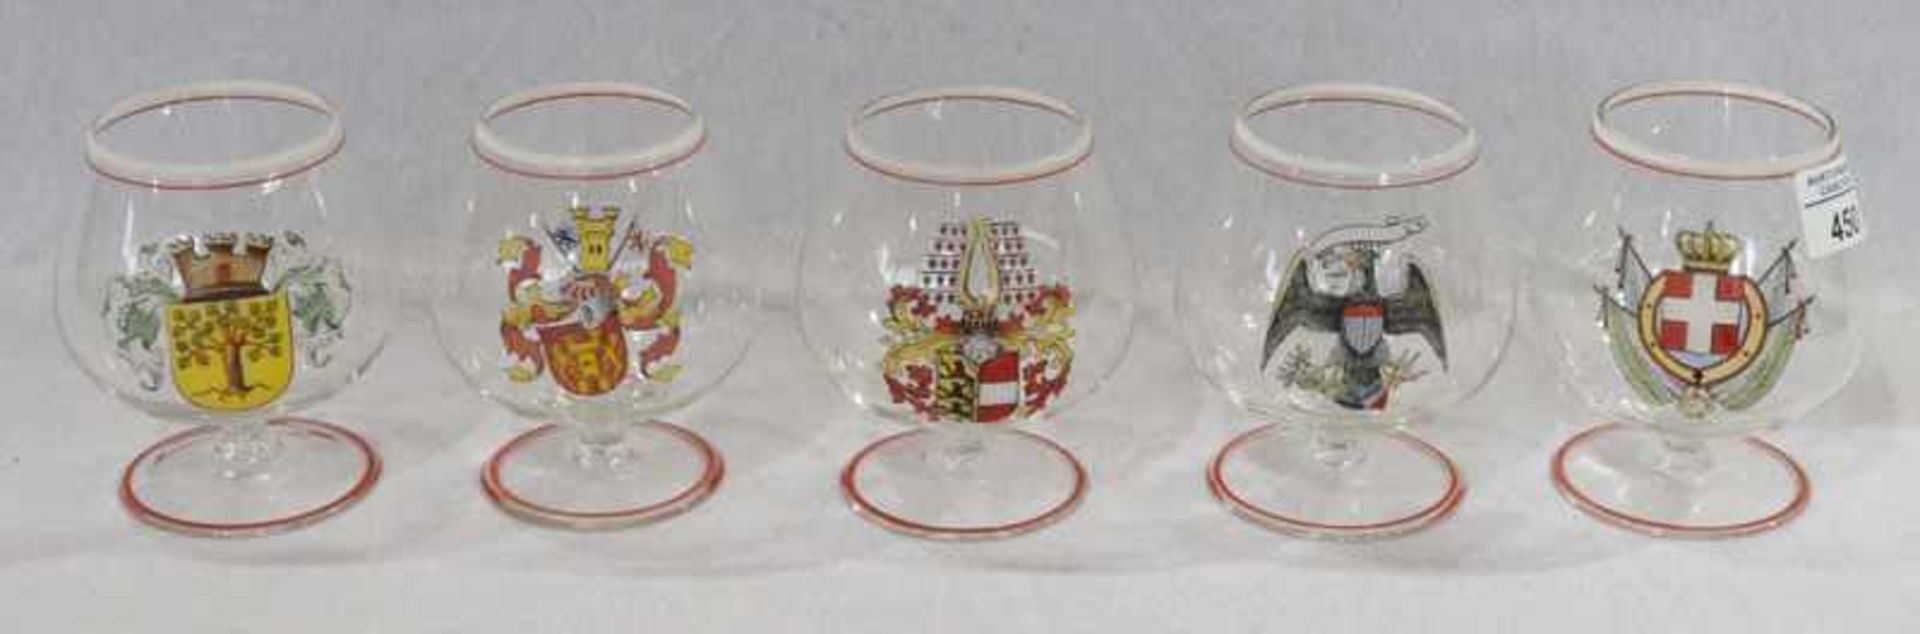 5 Cognacschwenker mit verschiedenen Wappendekoren, leicht berieben, H 11,5 cm